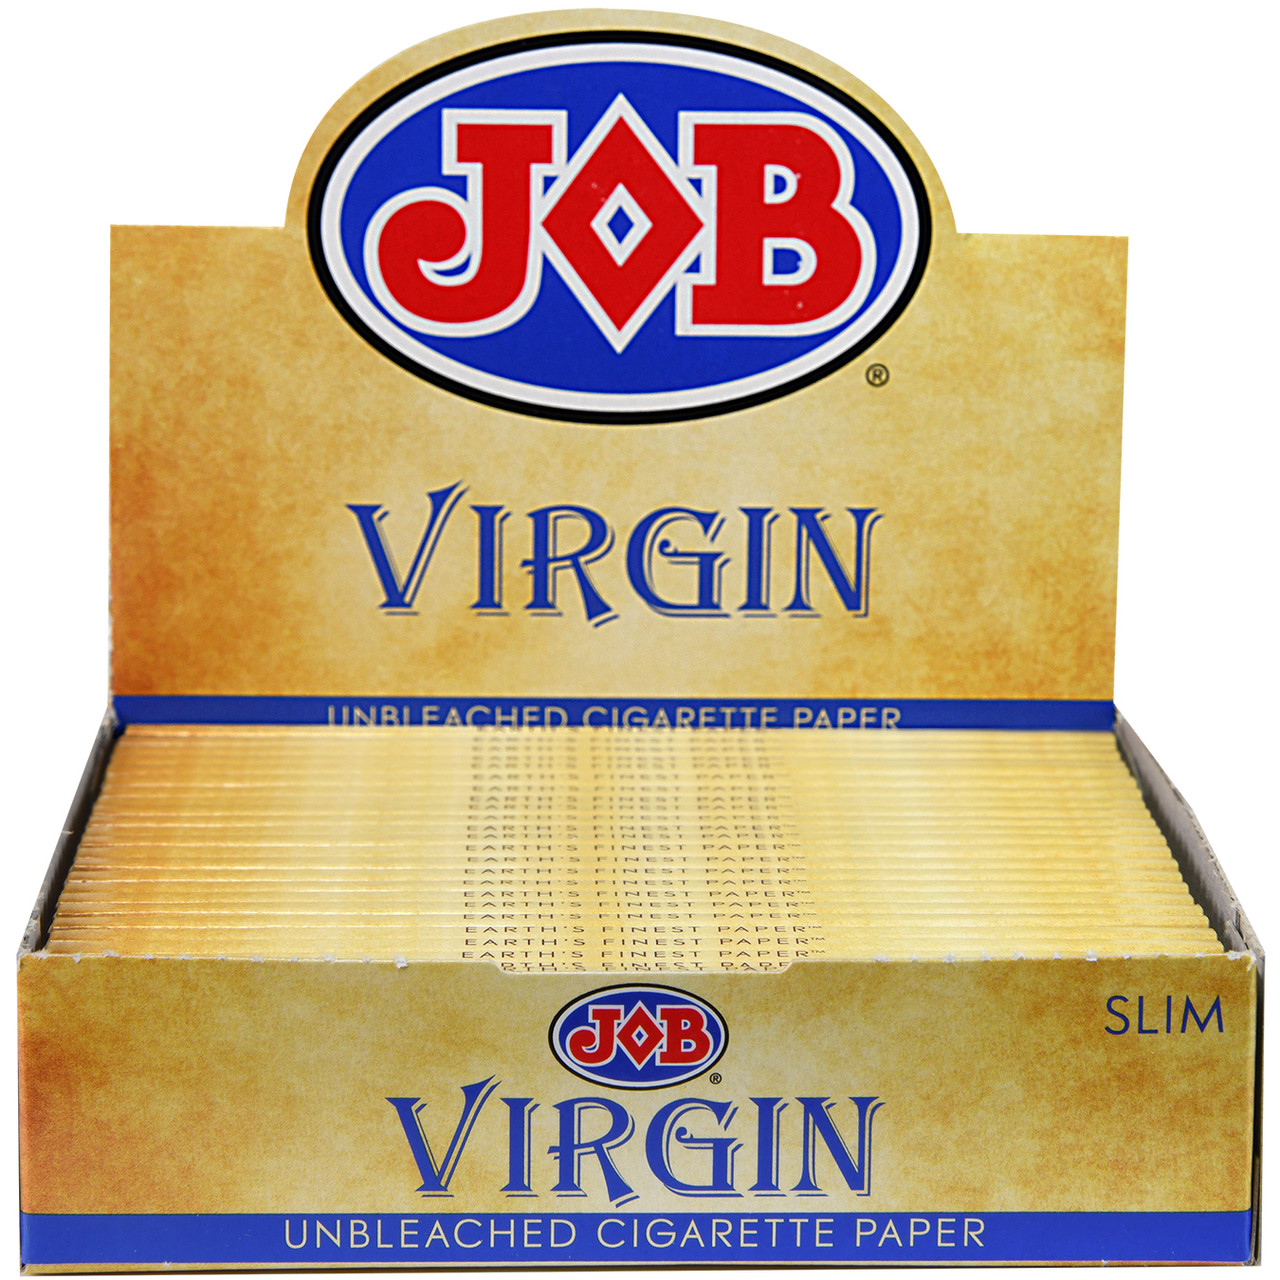 JOB Virgin Slim Rolling Papers - 24 ct. Box
JOB virgin papers
UNS Wholesale 
JOB papers wholesale
JOB rolling papers
JOB Virgin papers